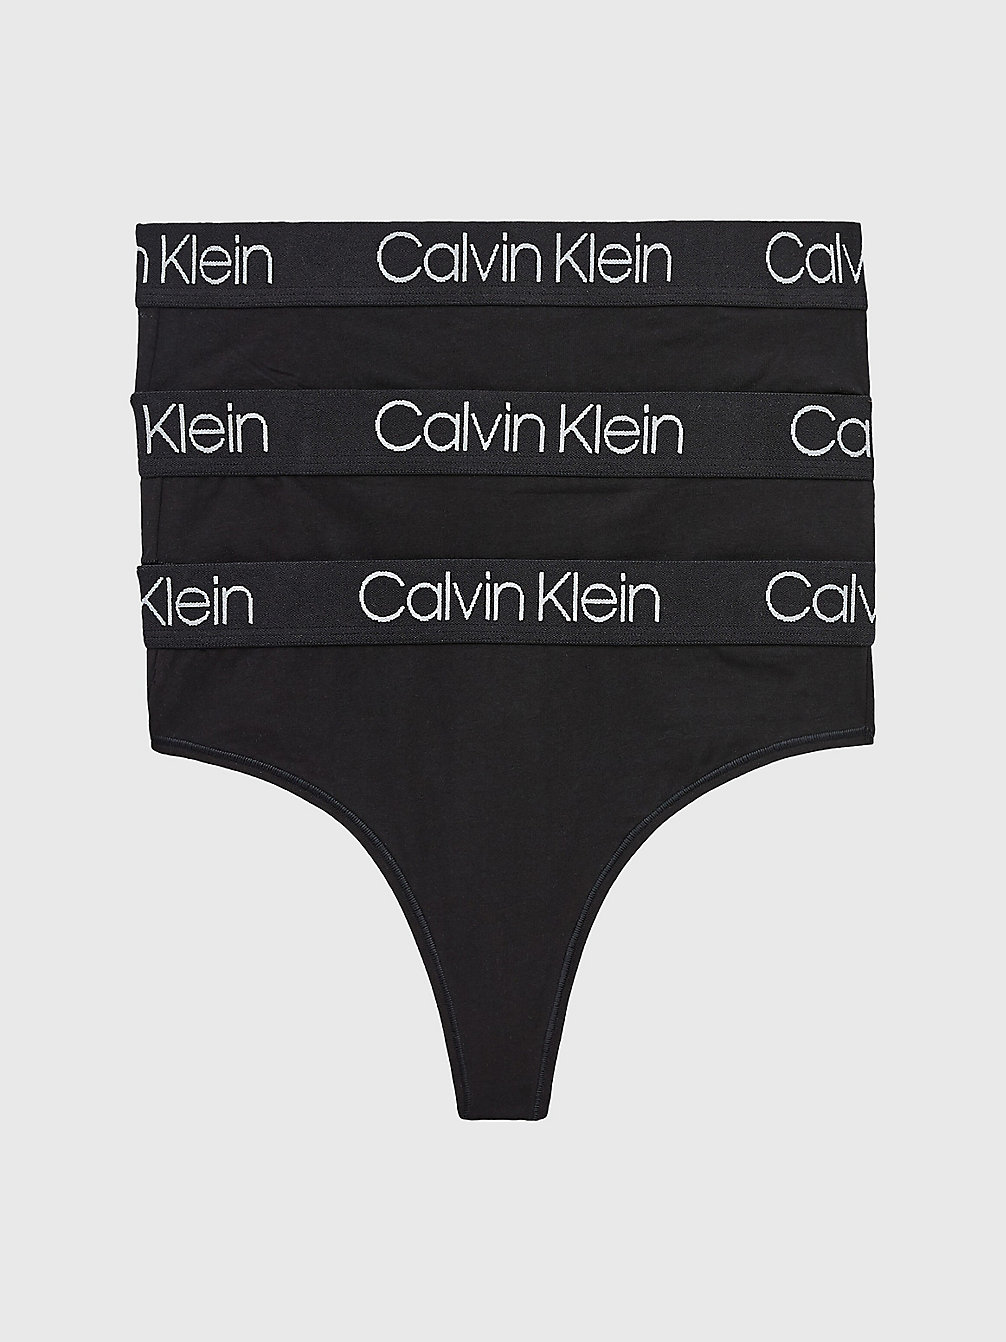 BLACK/BLACK/BLACK 3er-Pack High-Waist-Strings - Body undefined Damen Calvin Klein